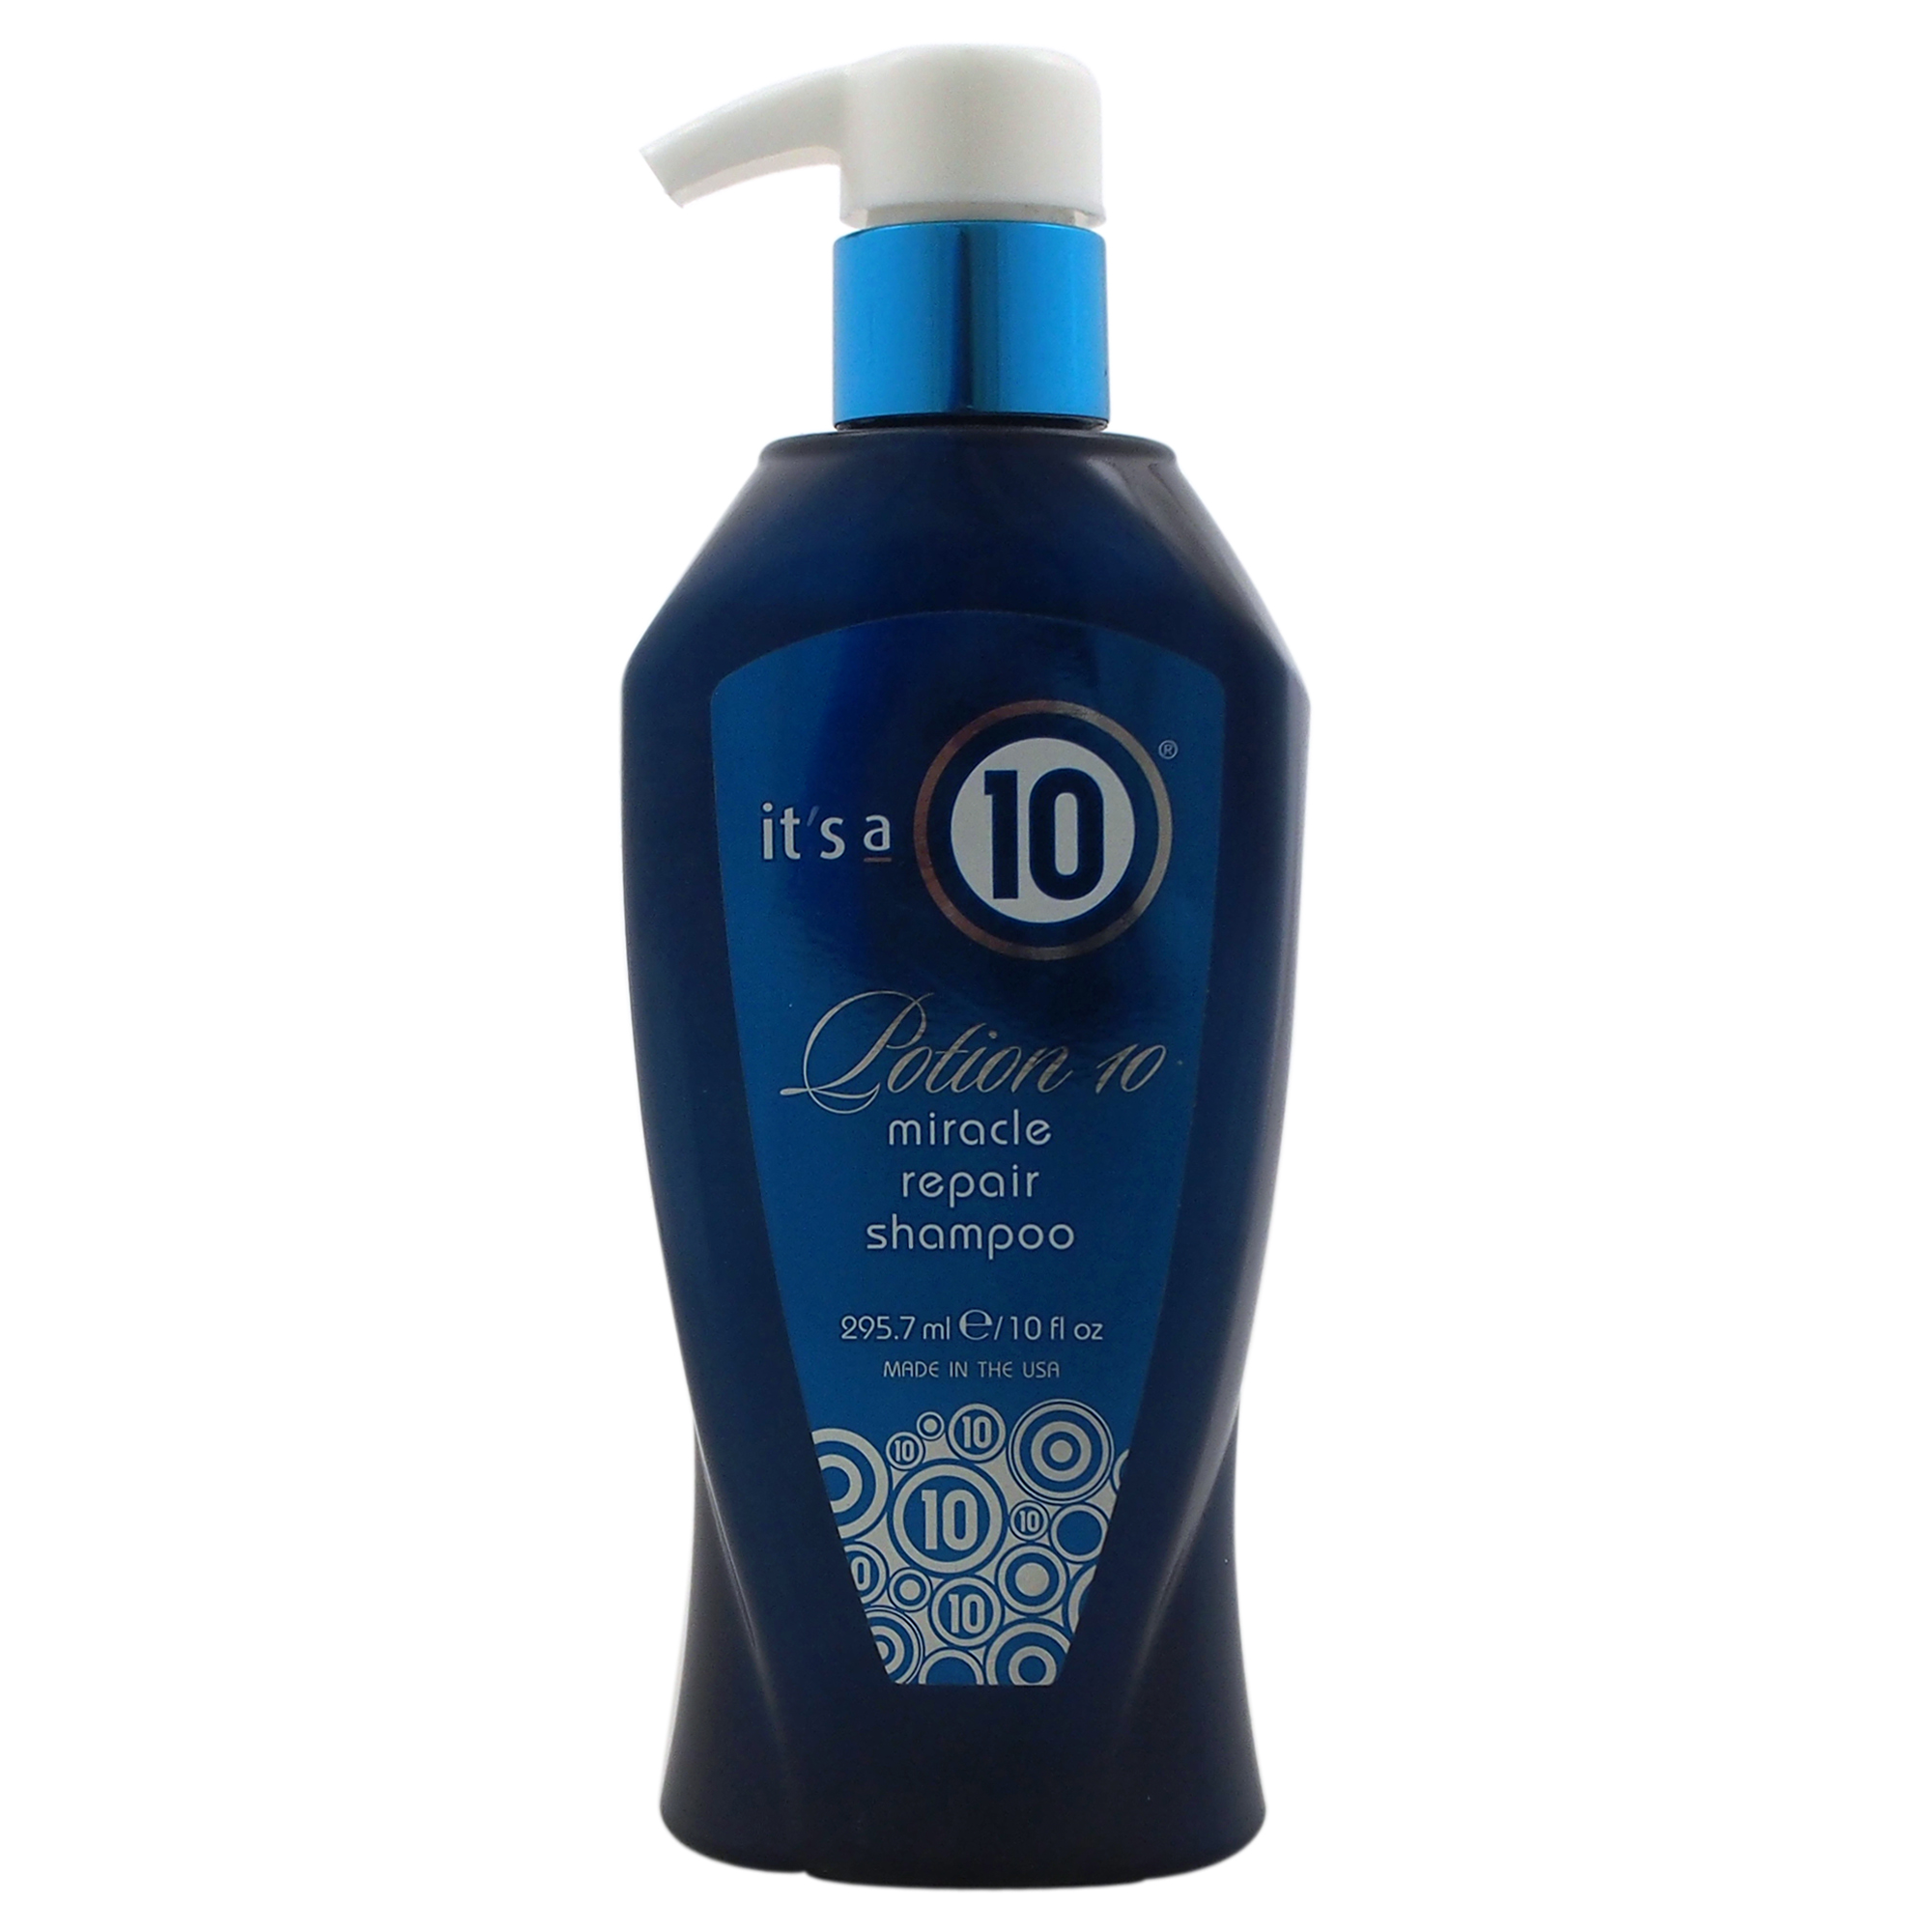 Its a 10 Potion 10 Miracle Repair Shampoo